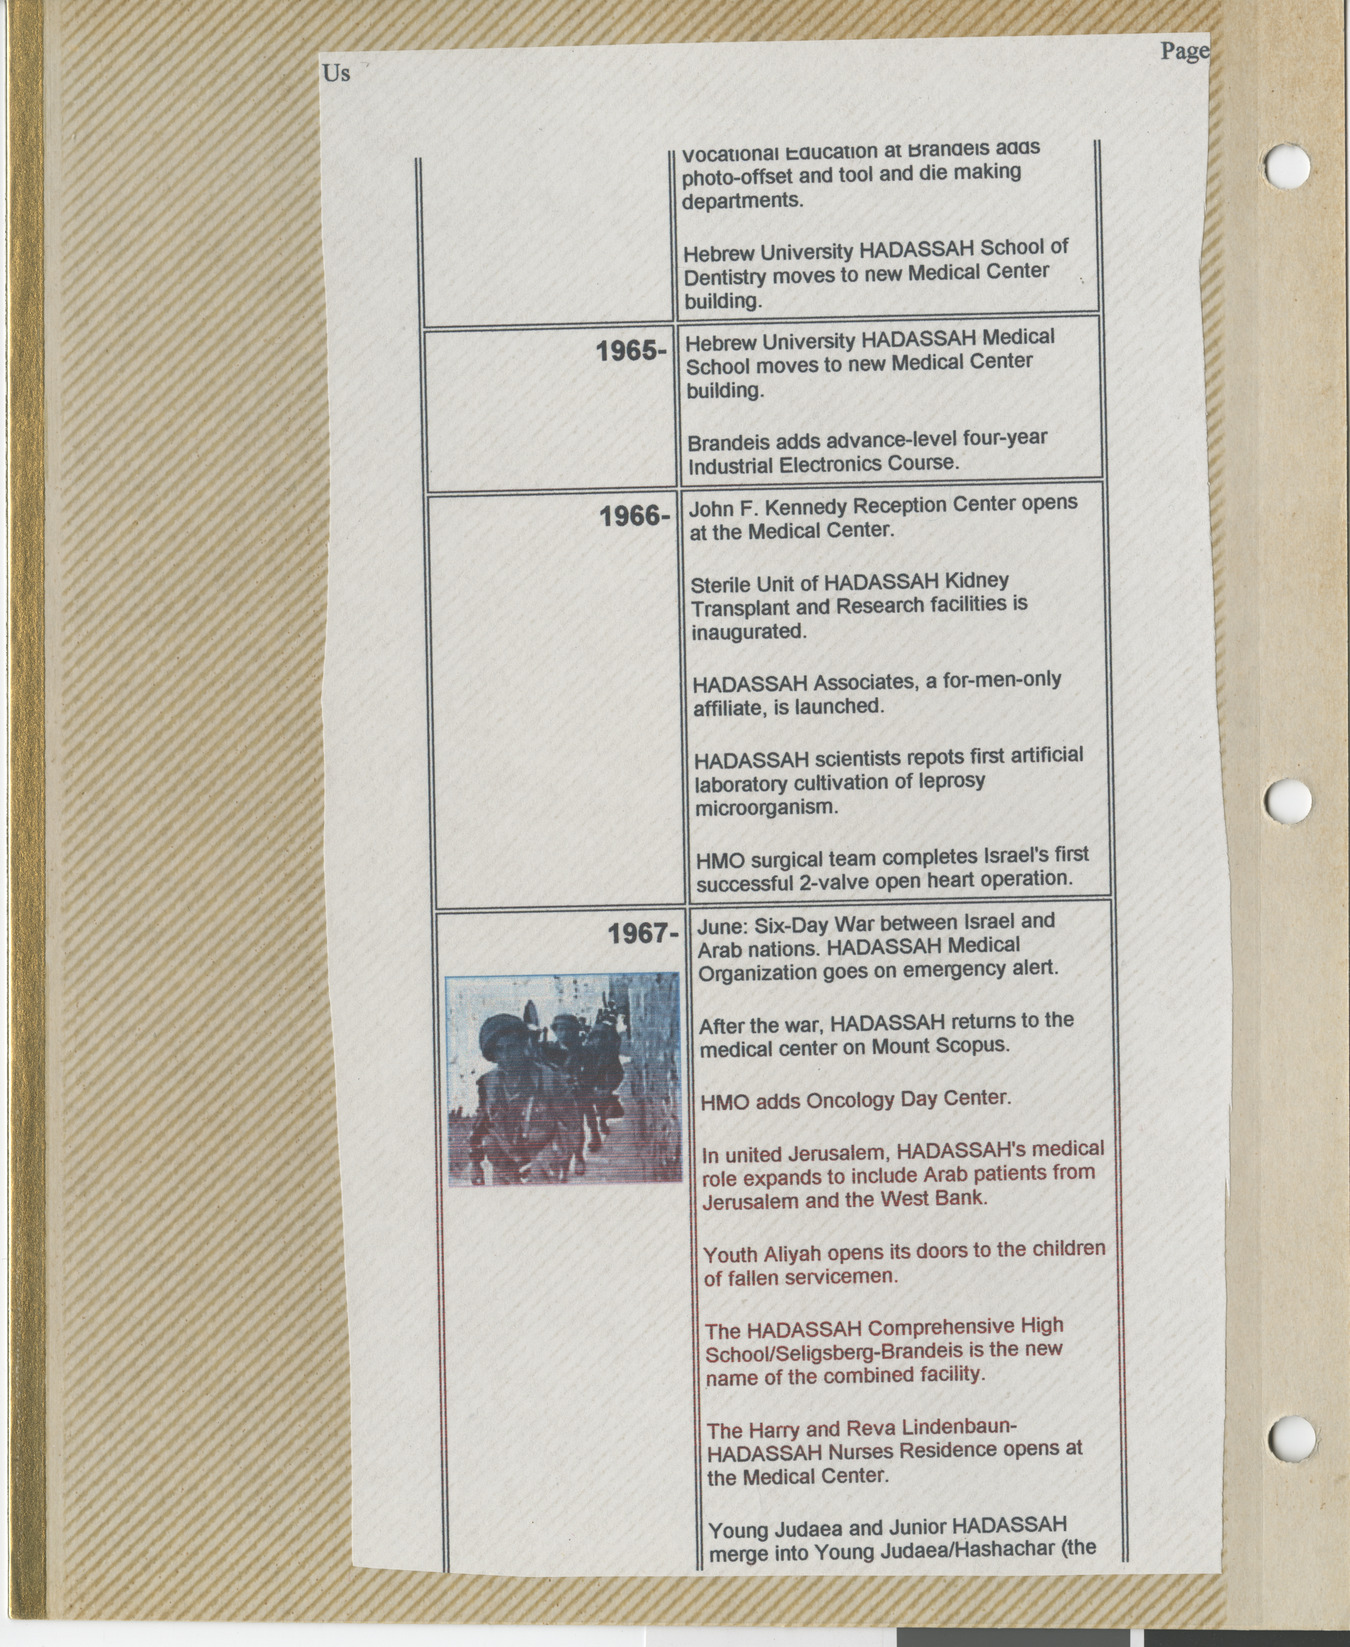 Clipping, Hadassah timeline 1965-1967